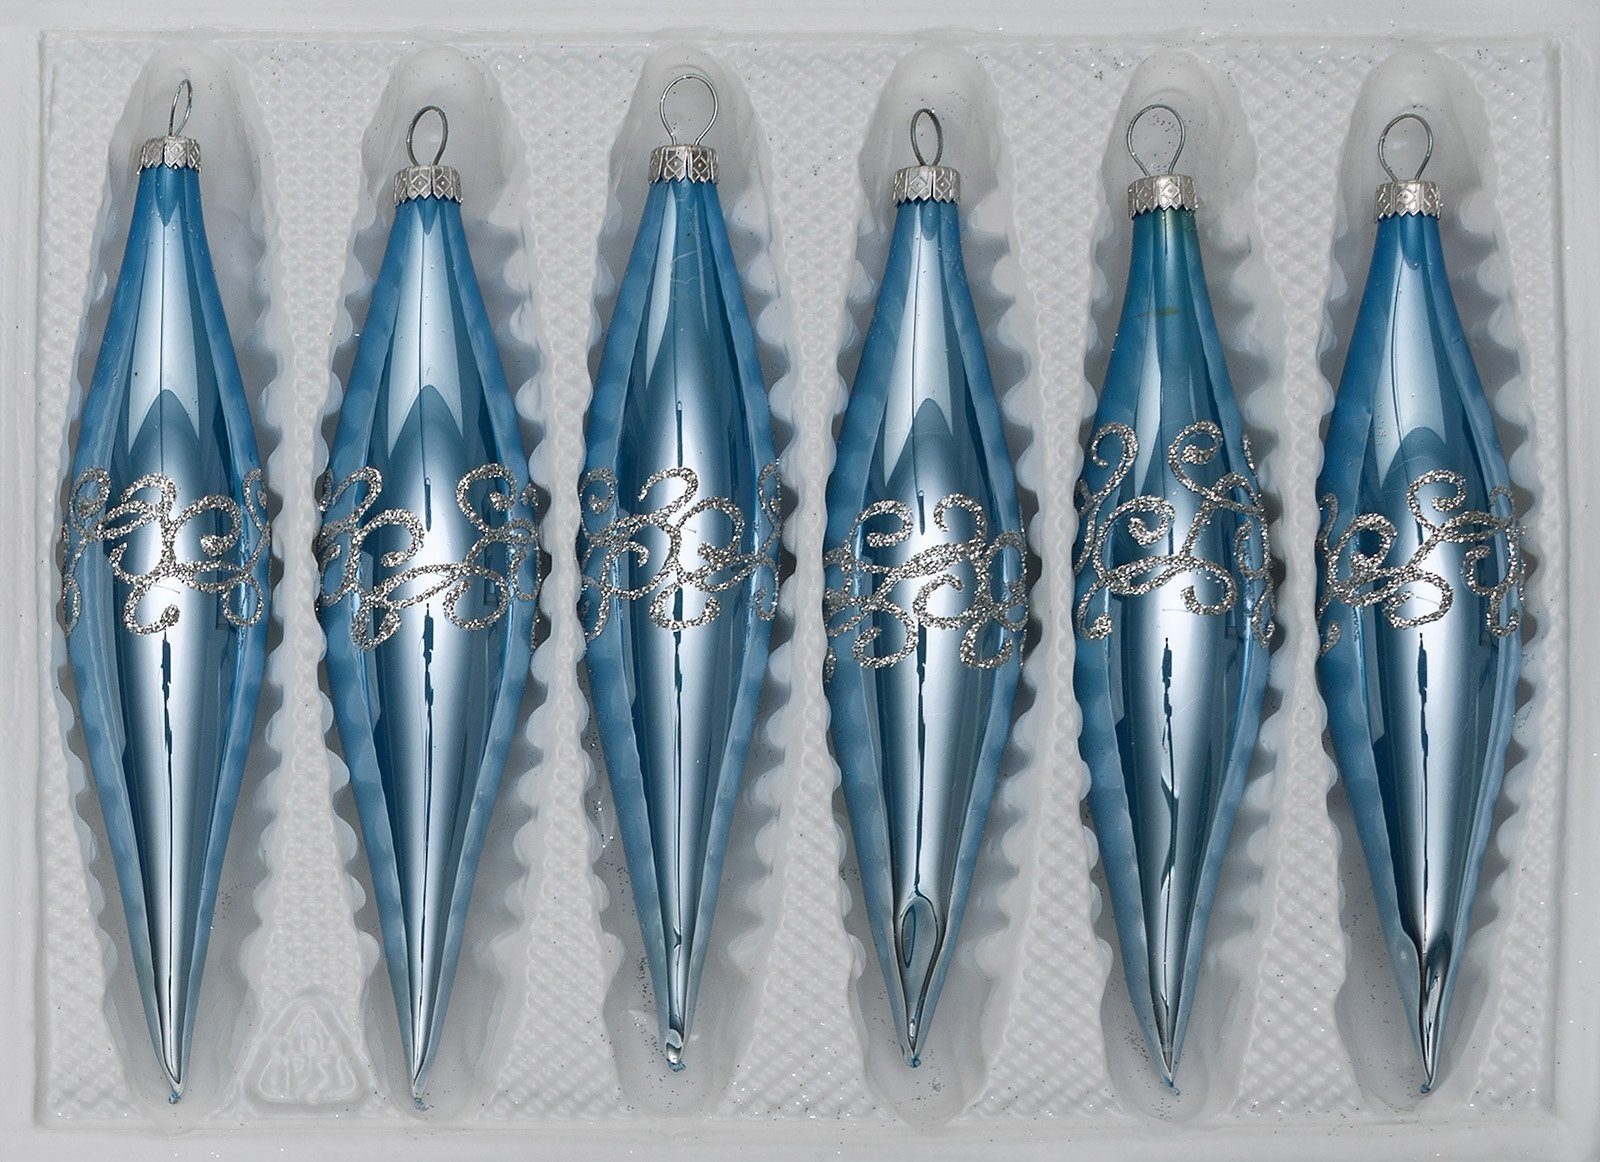 Navidacio Christbaumschmuck 6 tlg. in "Hochglanz-Blau-Silberne-Ornamente“ Set Glas-Zapfen